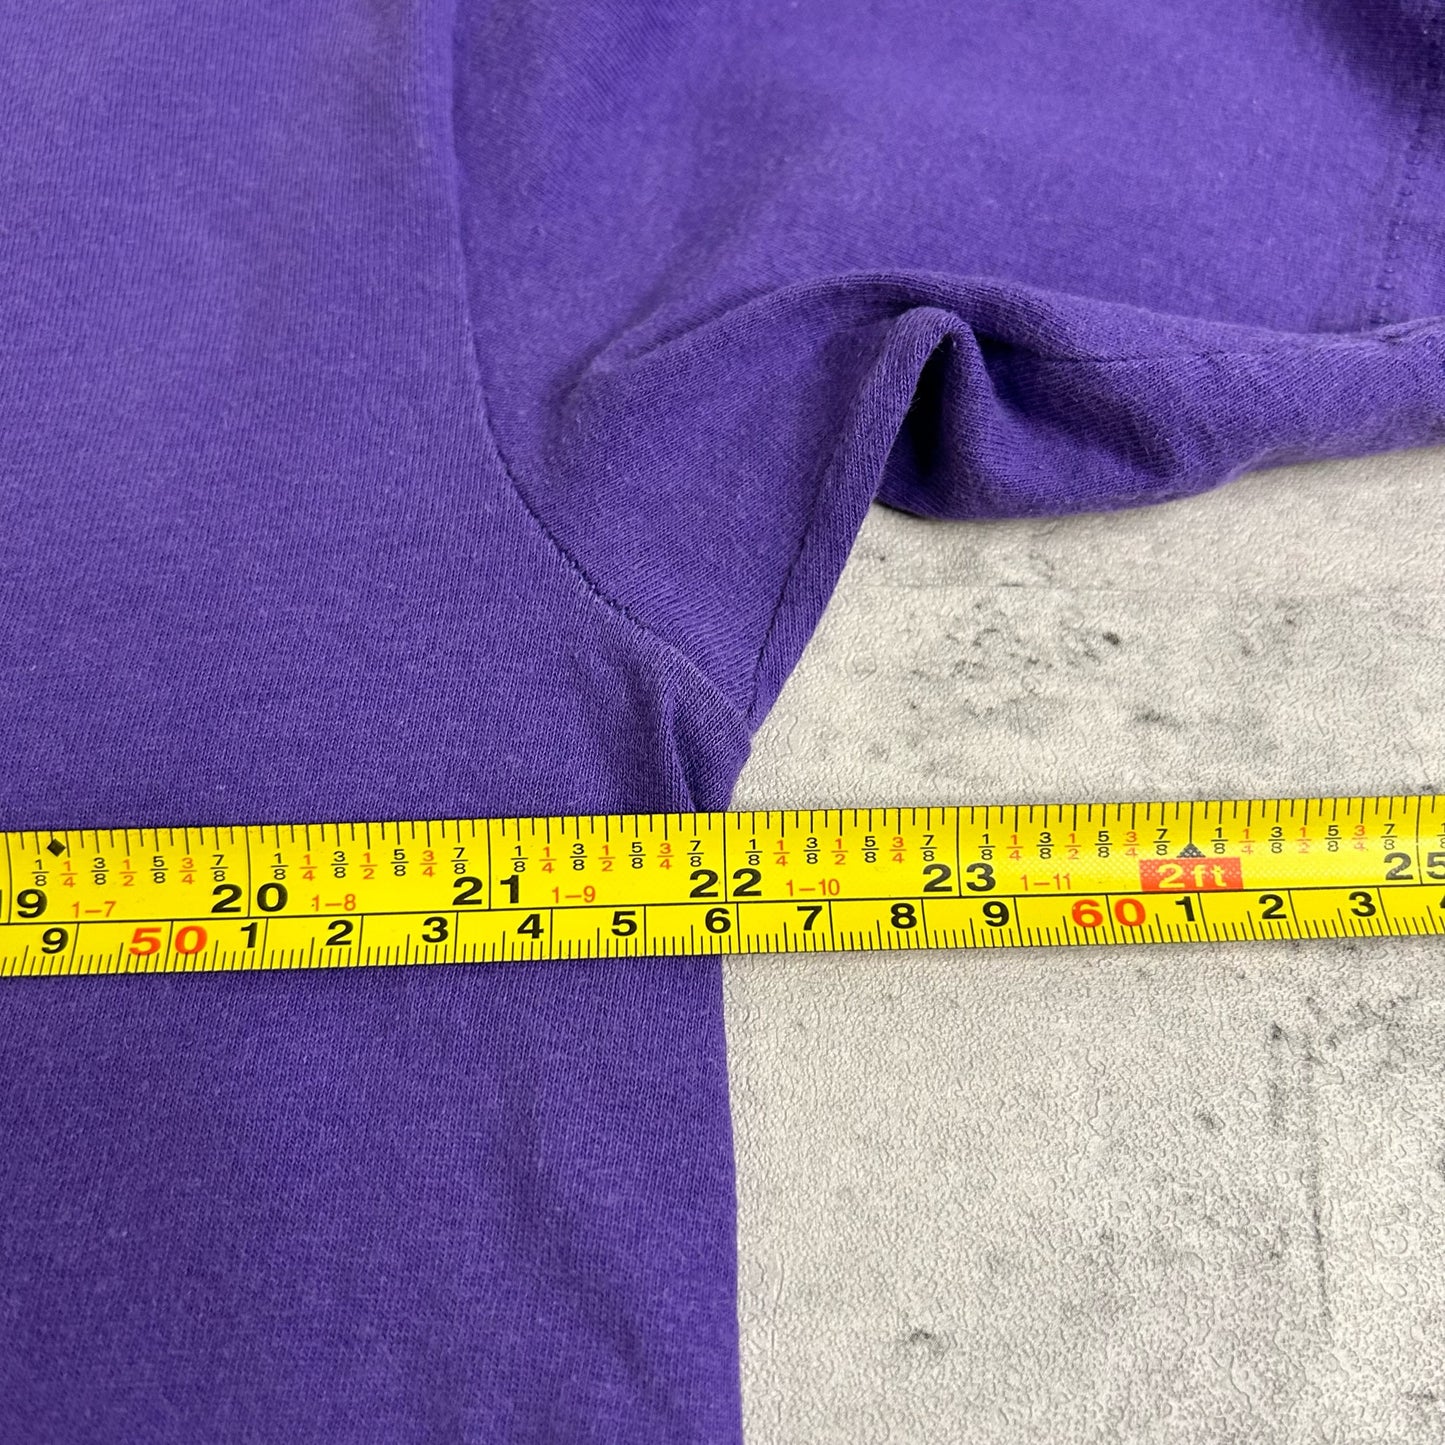 90's Labbatt Genuine Draft T-Shirt size XL